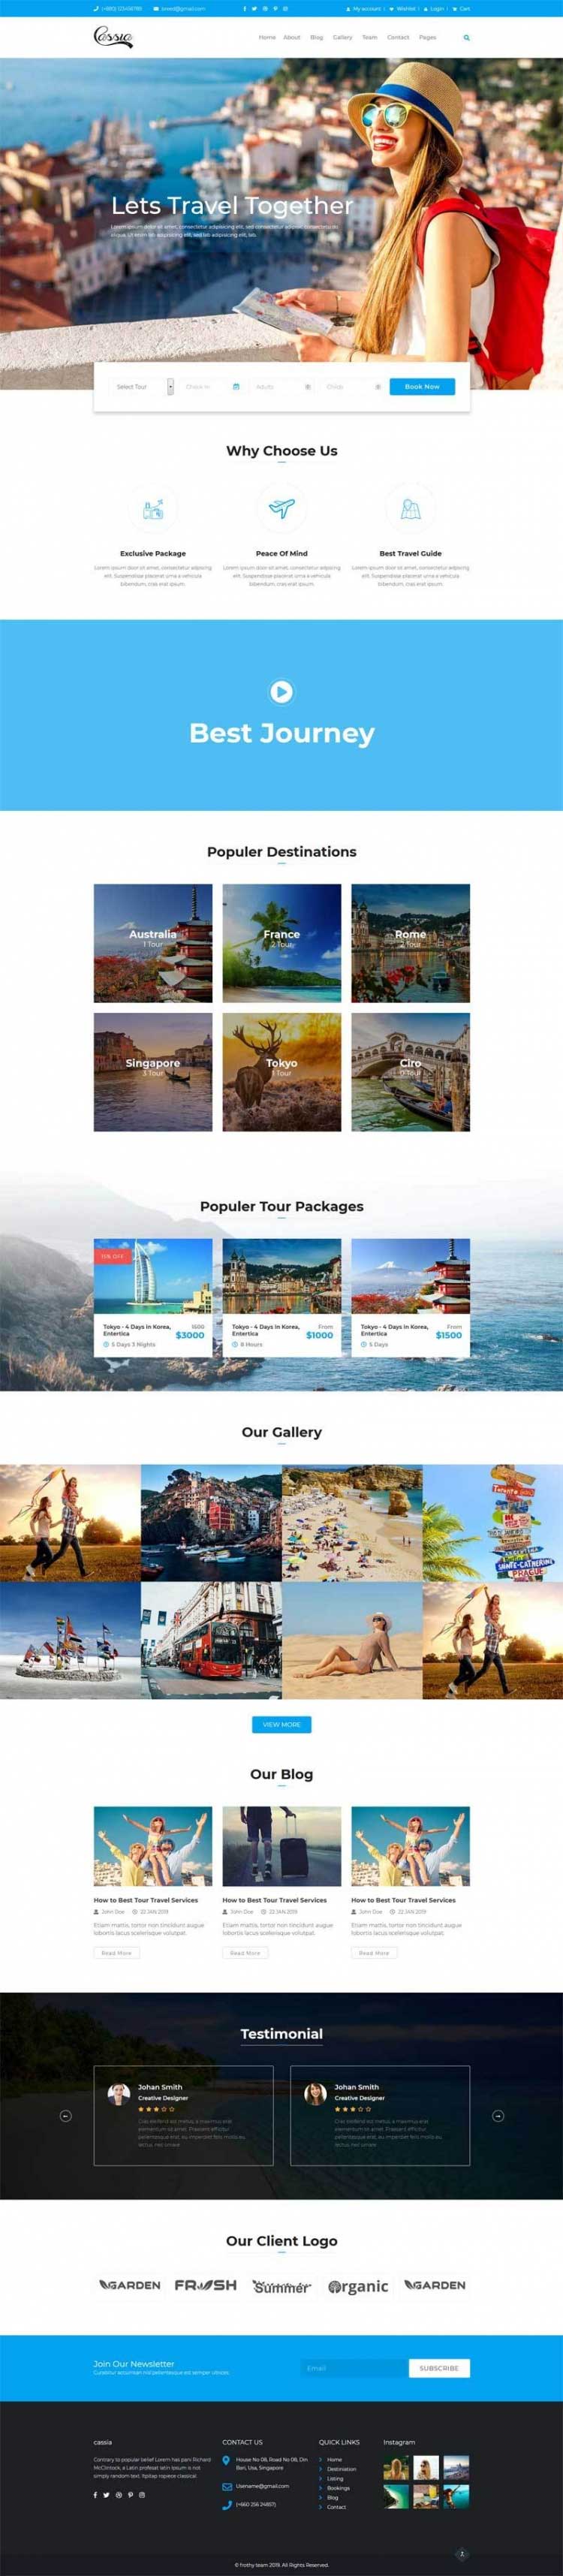 蓝色大气html旅行社旅游公司网站模板6265